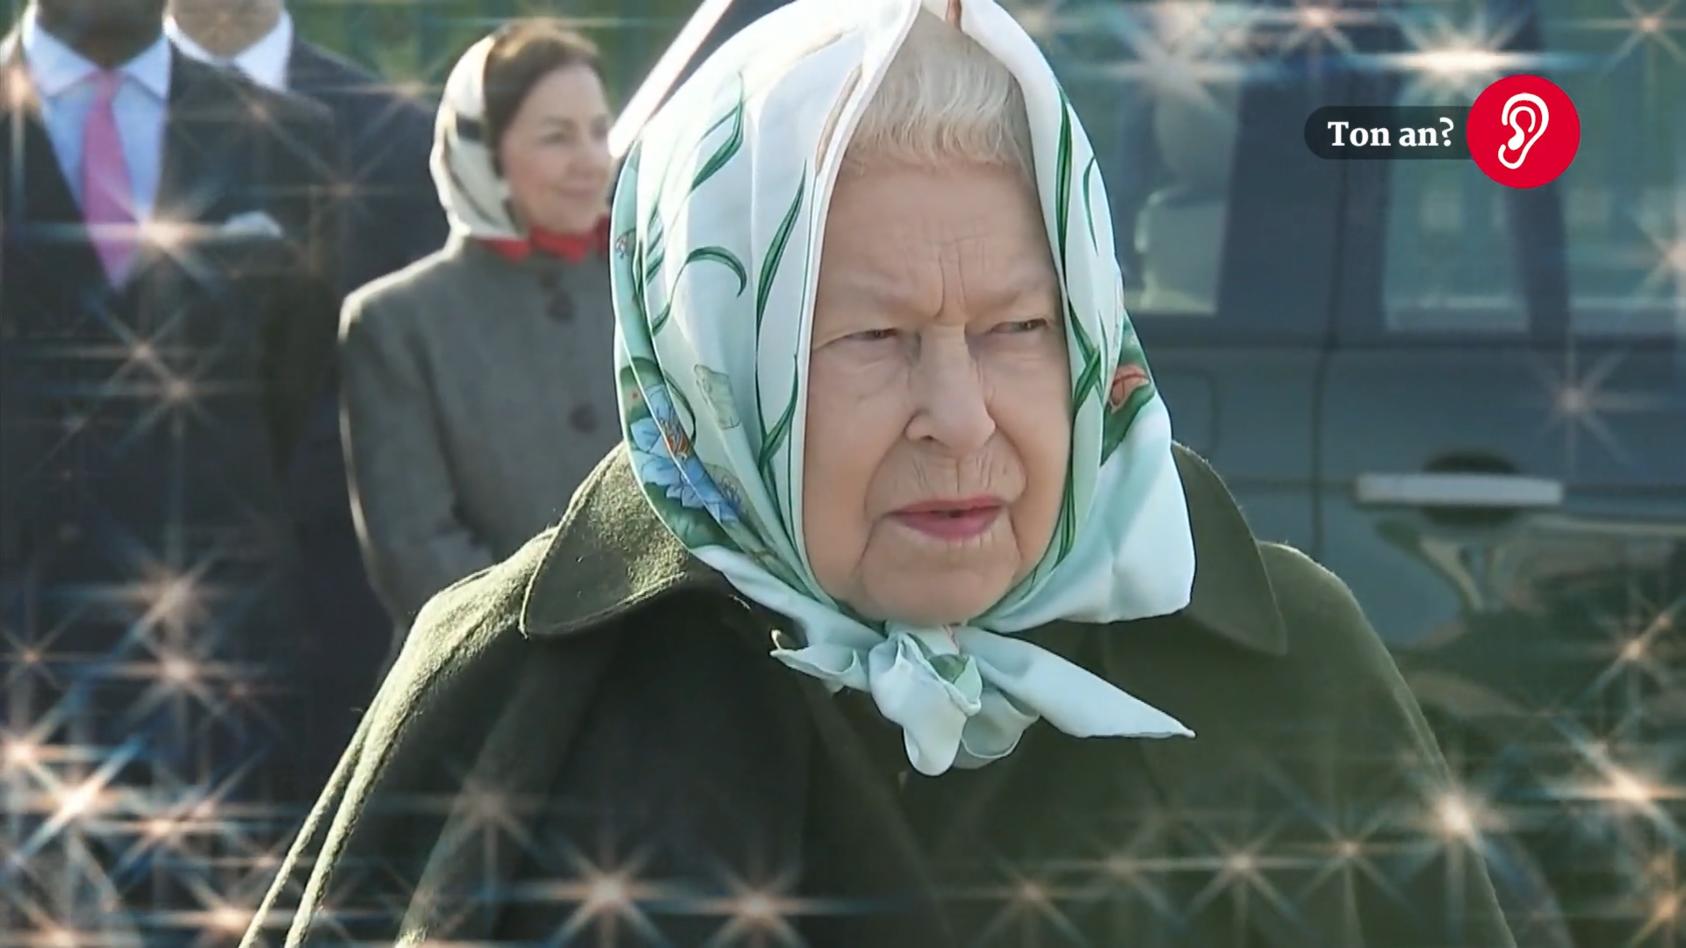 Die Queen steht auf DIESES deutsche Weihnachtsgebäck "Die Königin der Nüsse" für die britische Königin